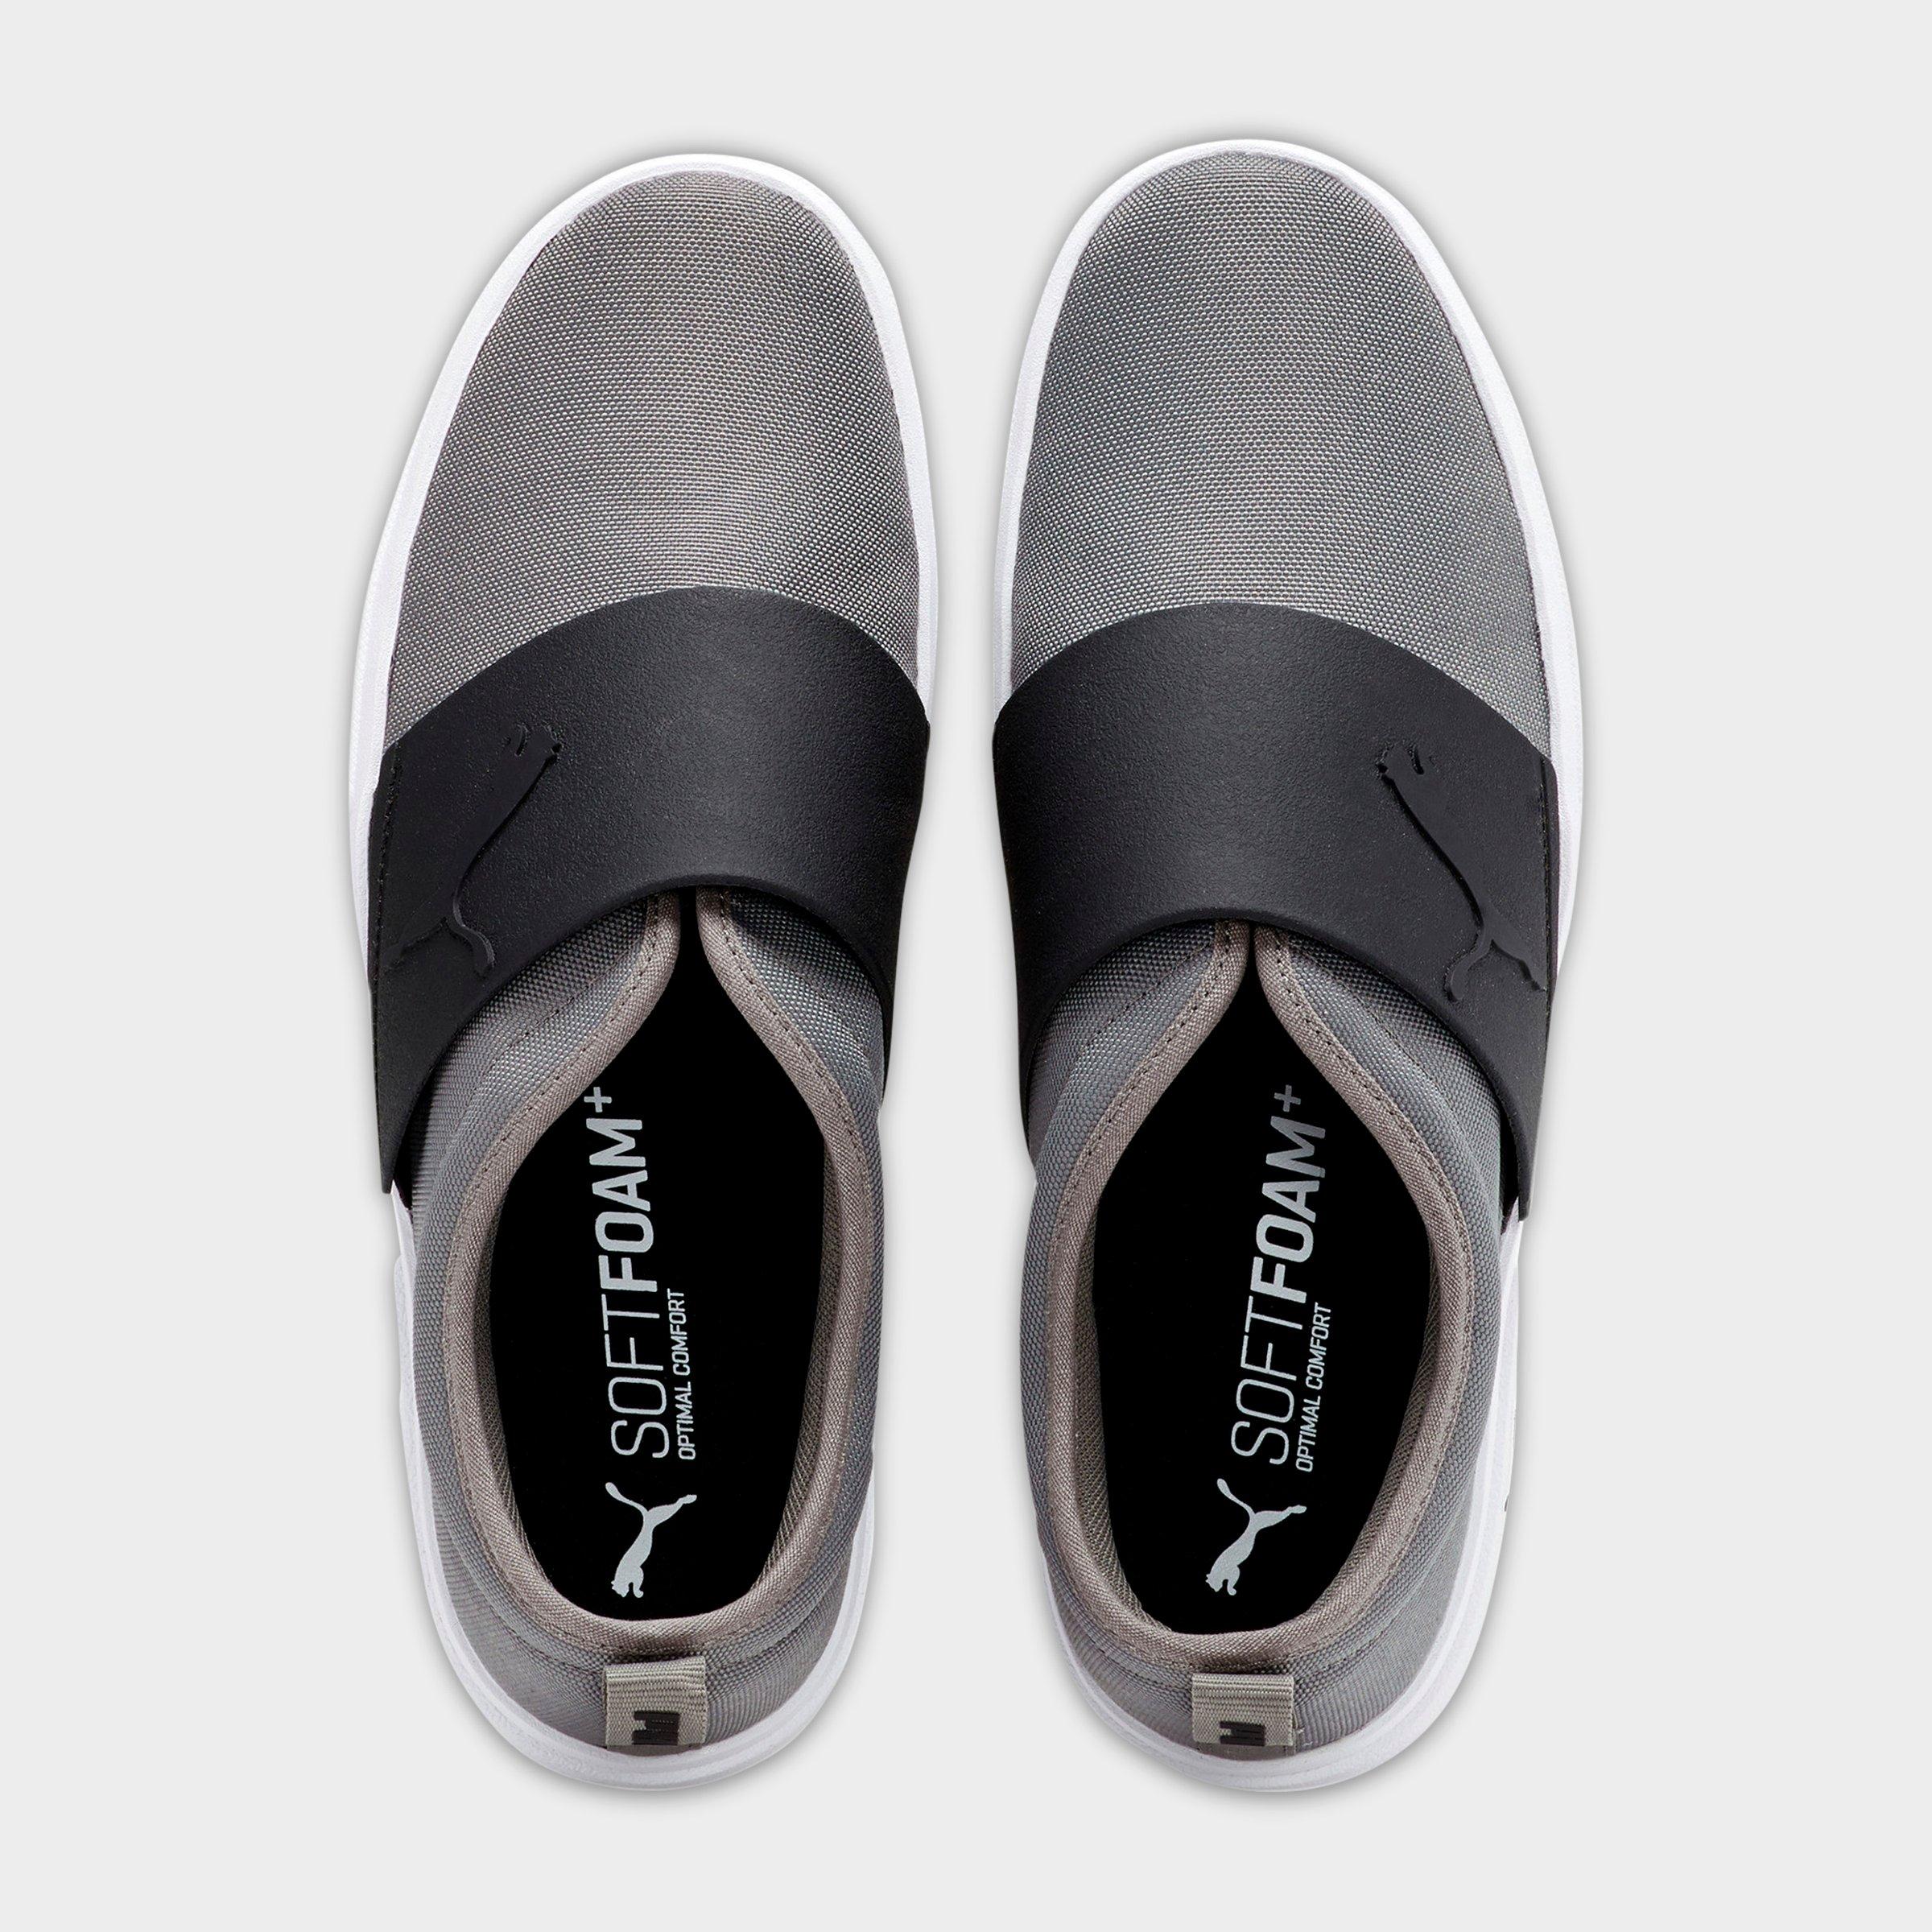 puma soft foam optimal comfort shoes